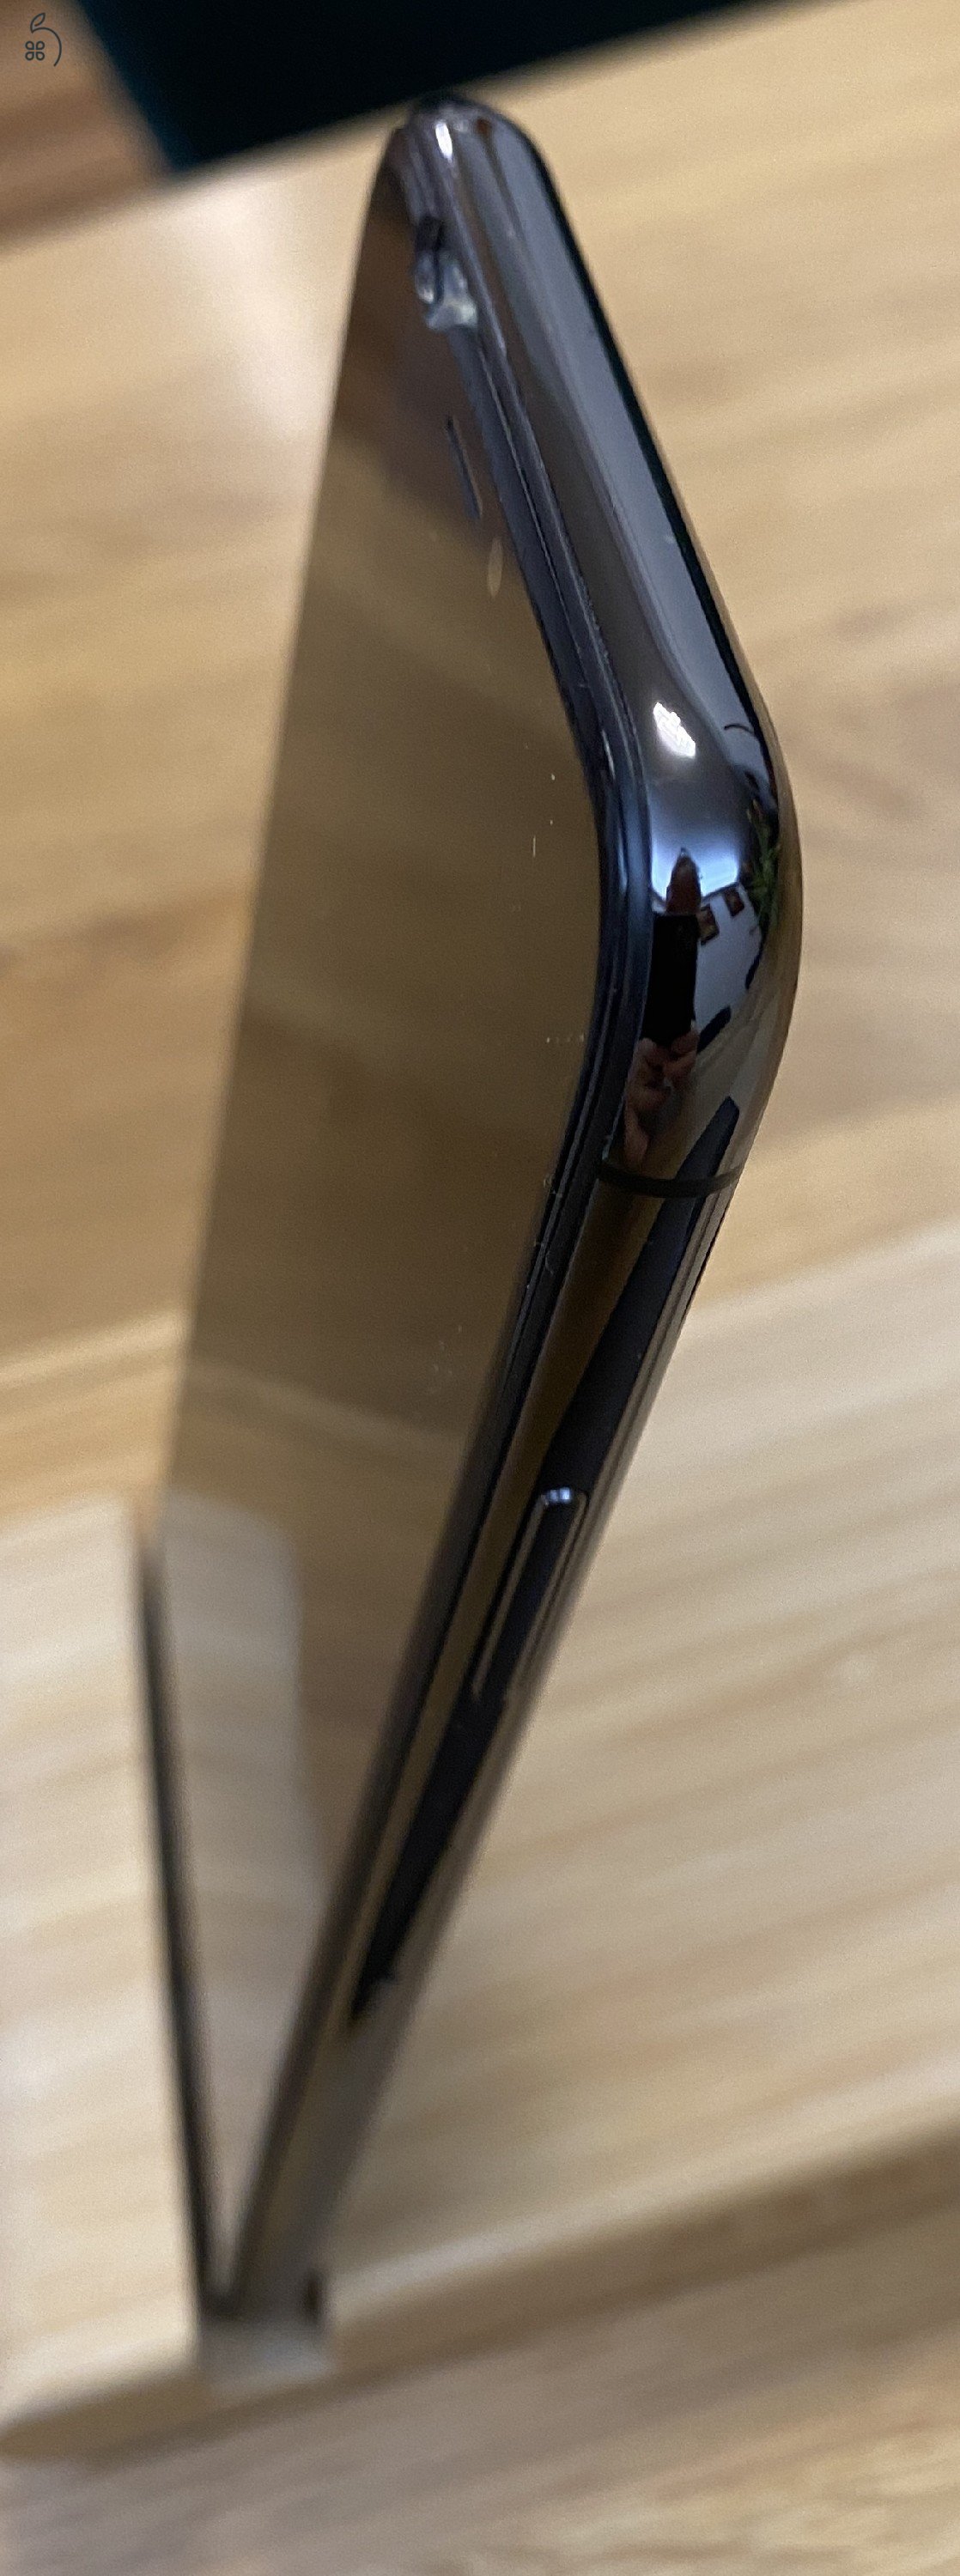 iPhone X, 256 GB, törött kijelző, hibás mikrofonok, no face ID